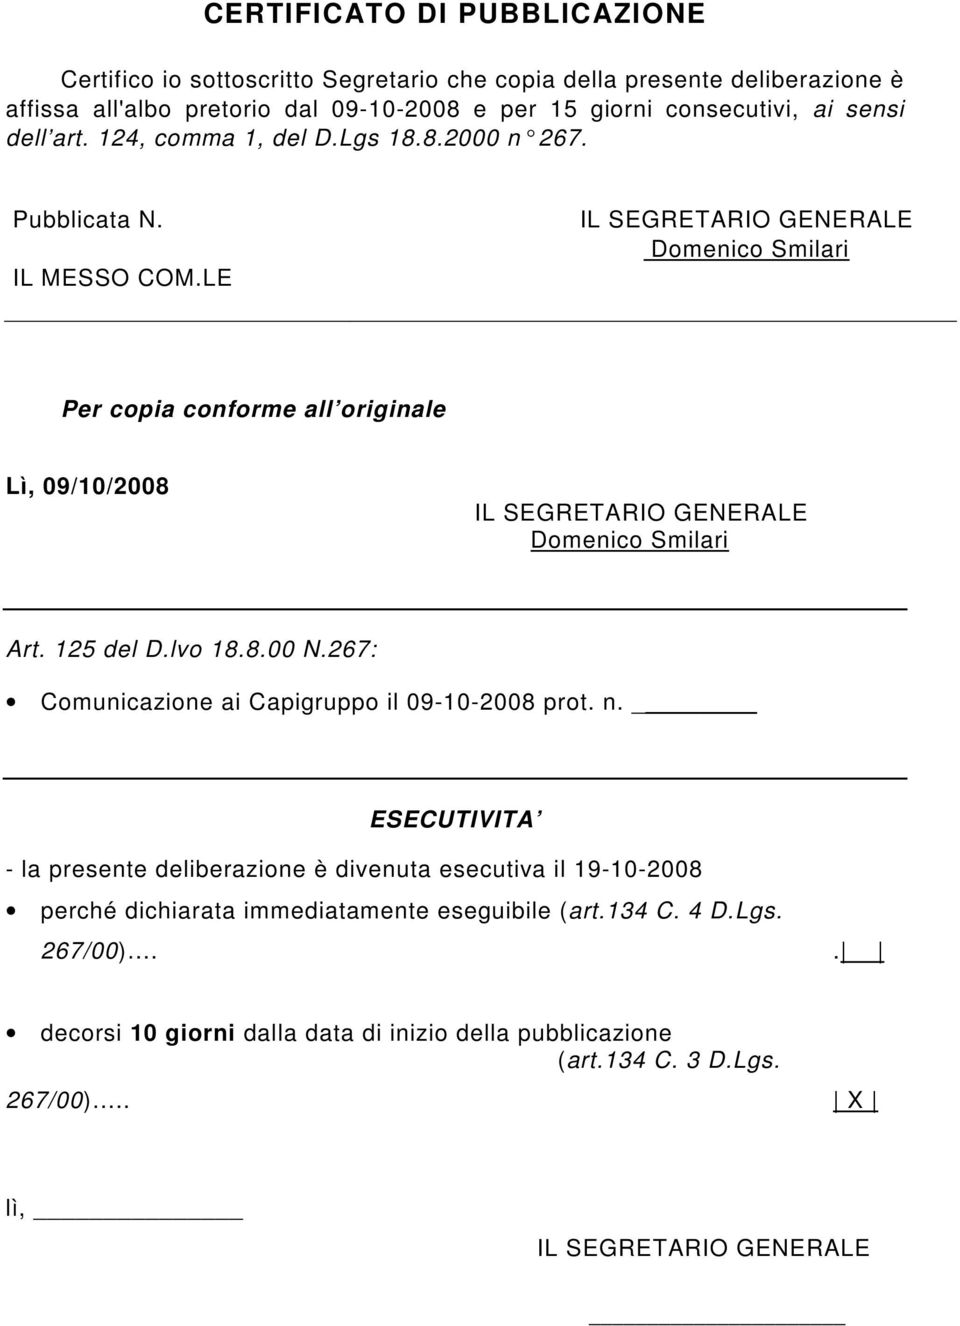 LE IL SEGRETARIO GENERALE Domenico Smilari Per copia forme all originale Lì, 09/10/2008 IL SEGRETARIO GENERALE Domenico Smilari Art. 125 del D.lvo 18.8.00 N.